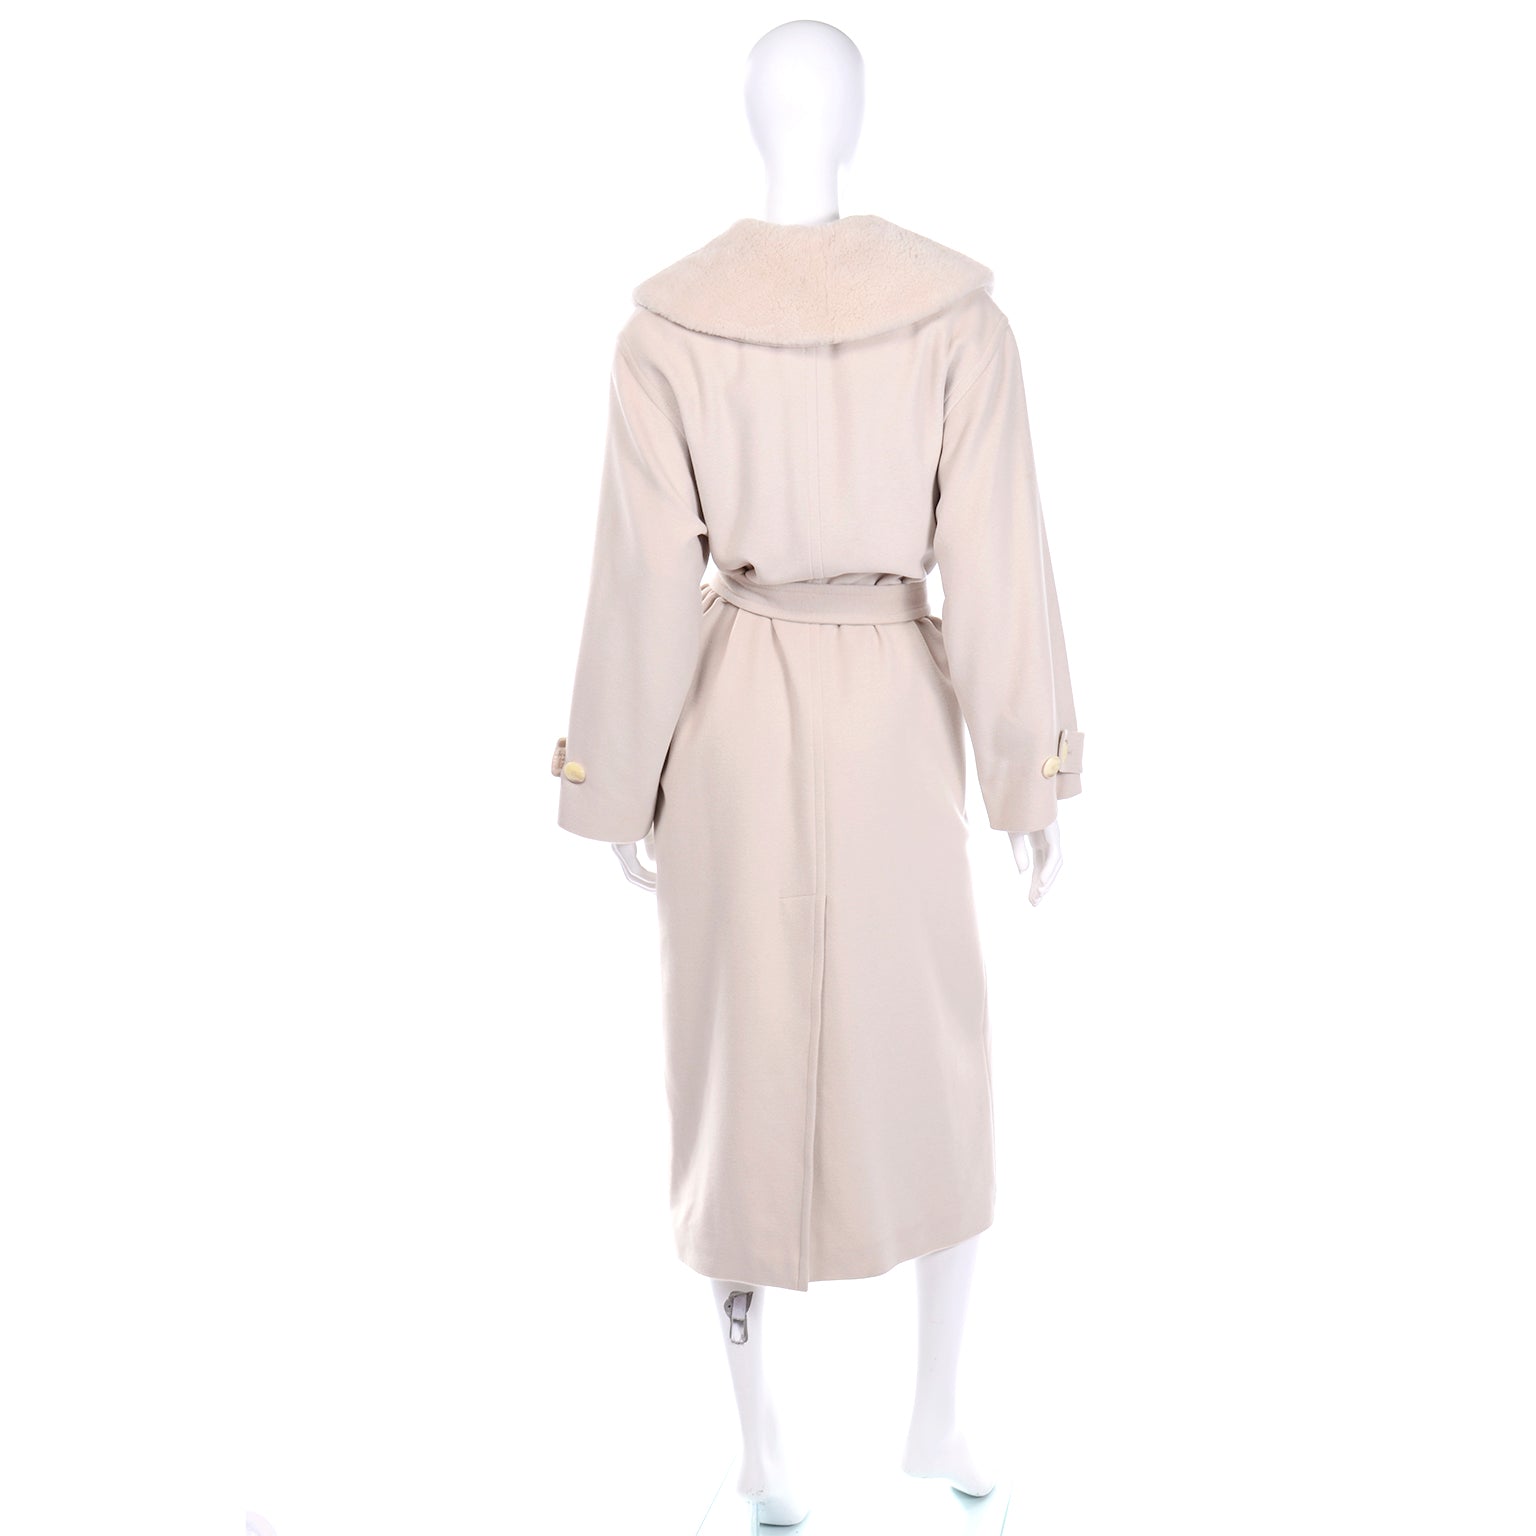 Sold at Auction: Louis Féraud, Louis Feraud Men's Cashmere & Wool Coat